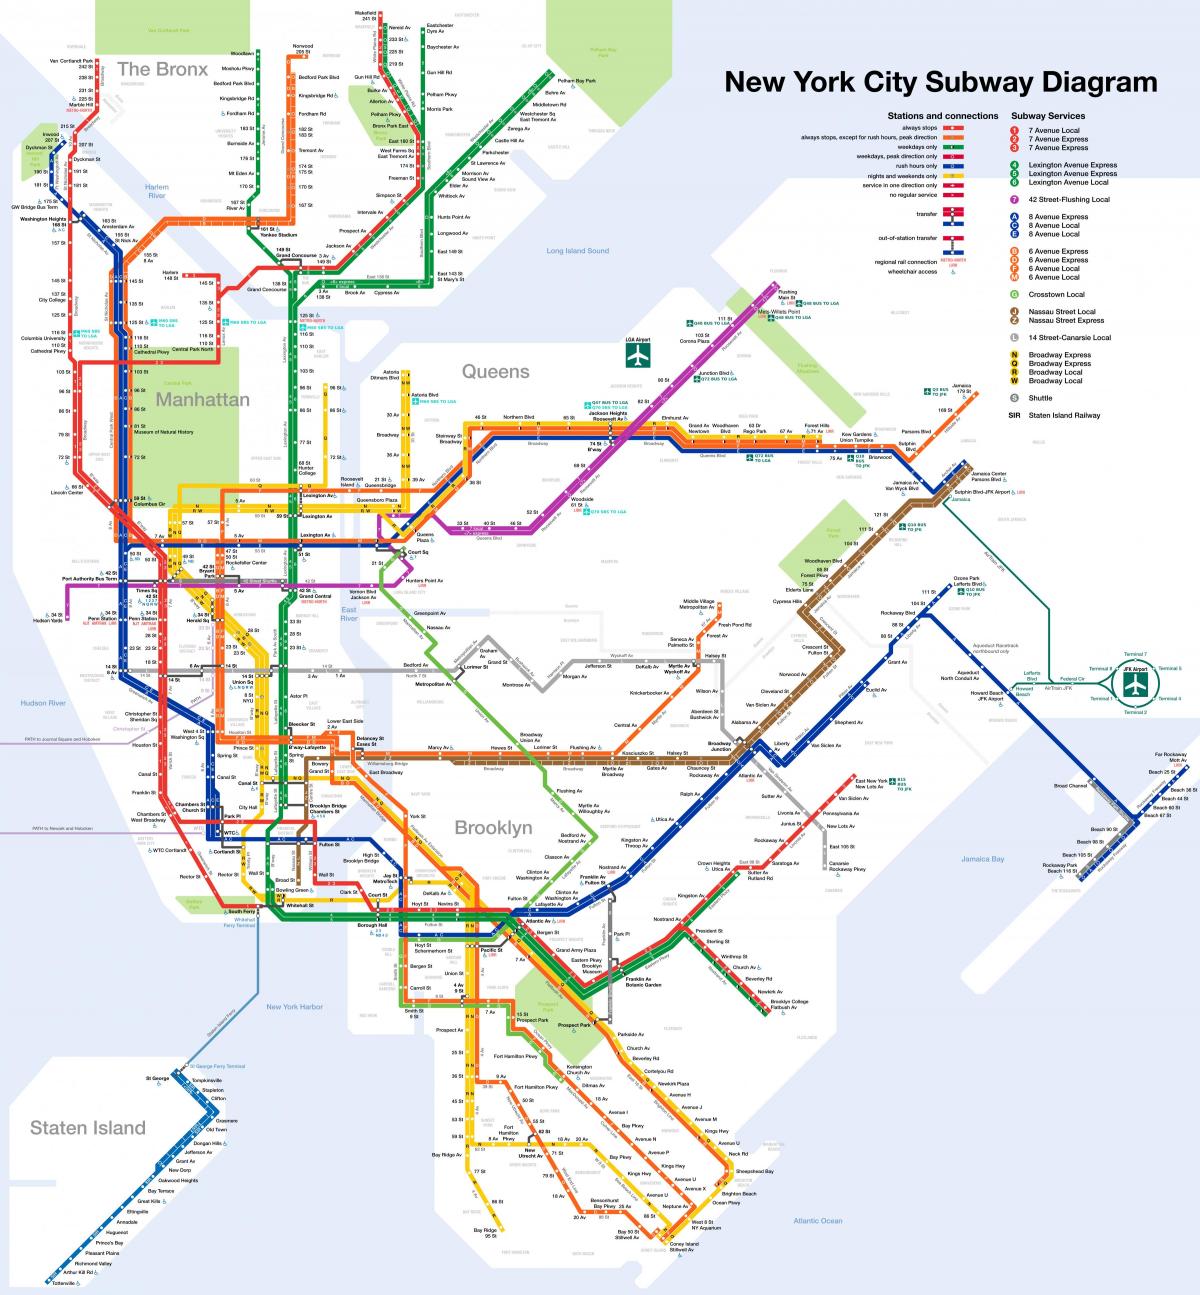 Mapa das estações ferroviárias de Brooklyn